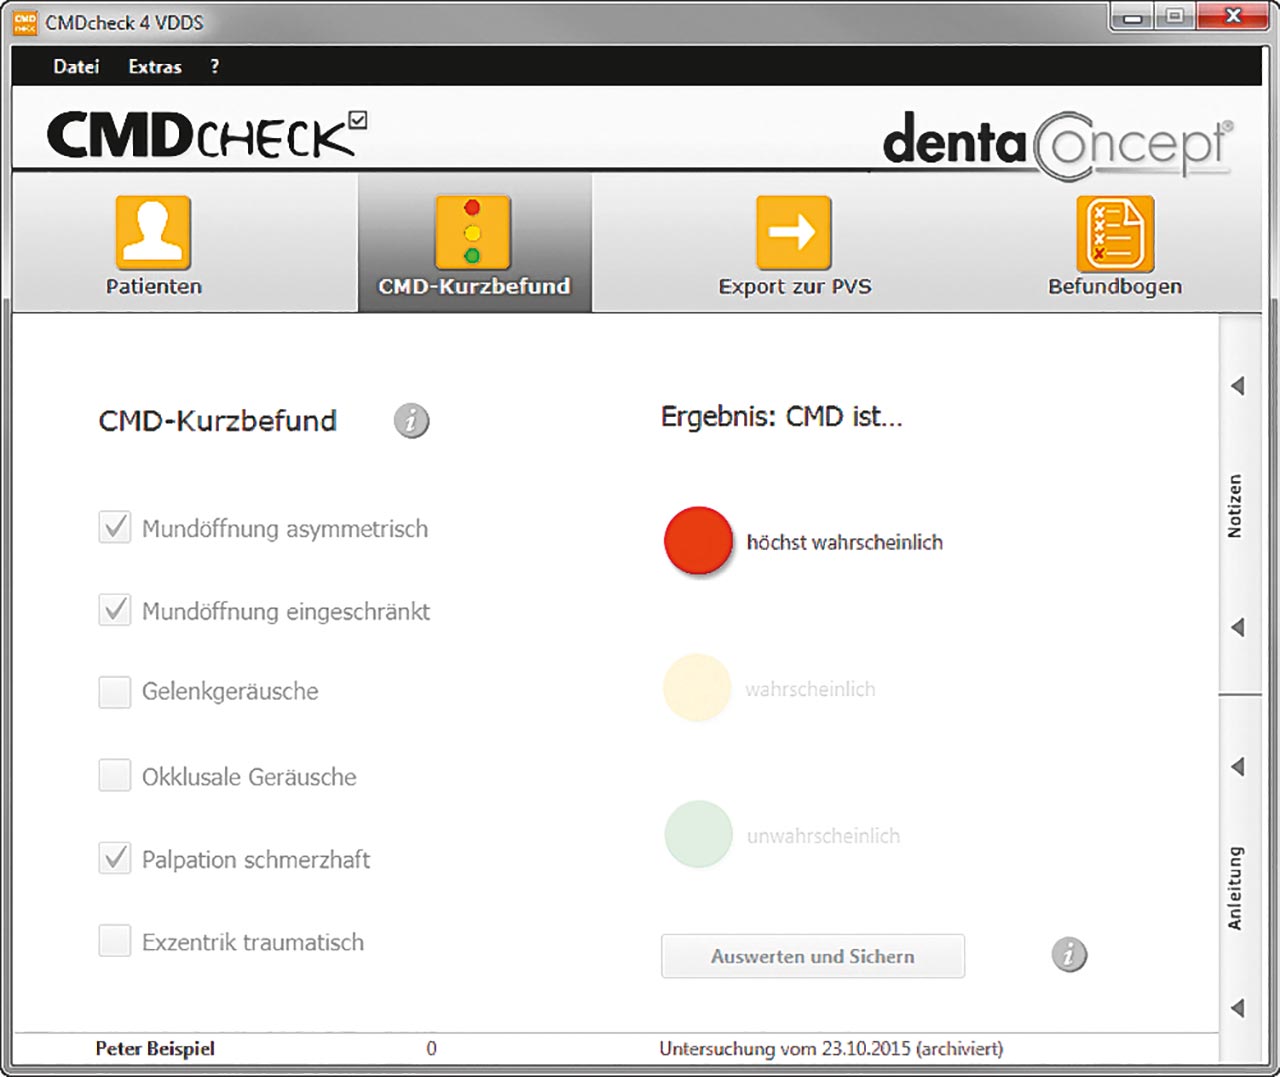 Abb. 14 Erfassung und Auswertung des CMD- Kurzbefundes mittels der Software CMDcheck 4 (Freeware, siehe www.dentaConcept.de)